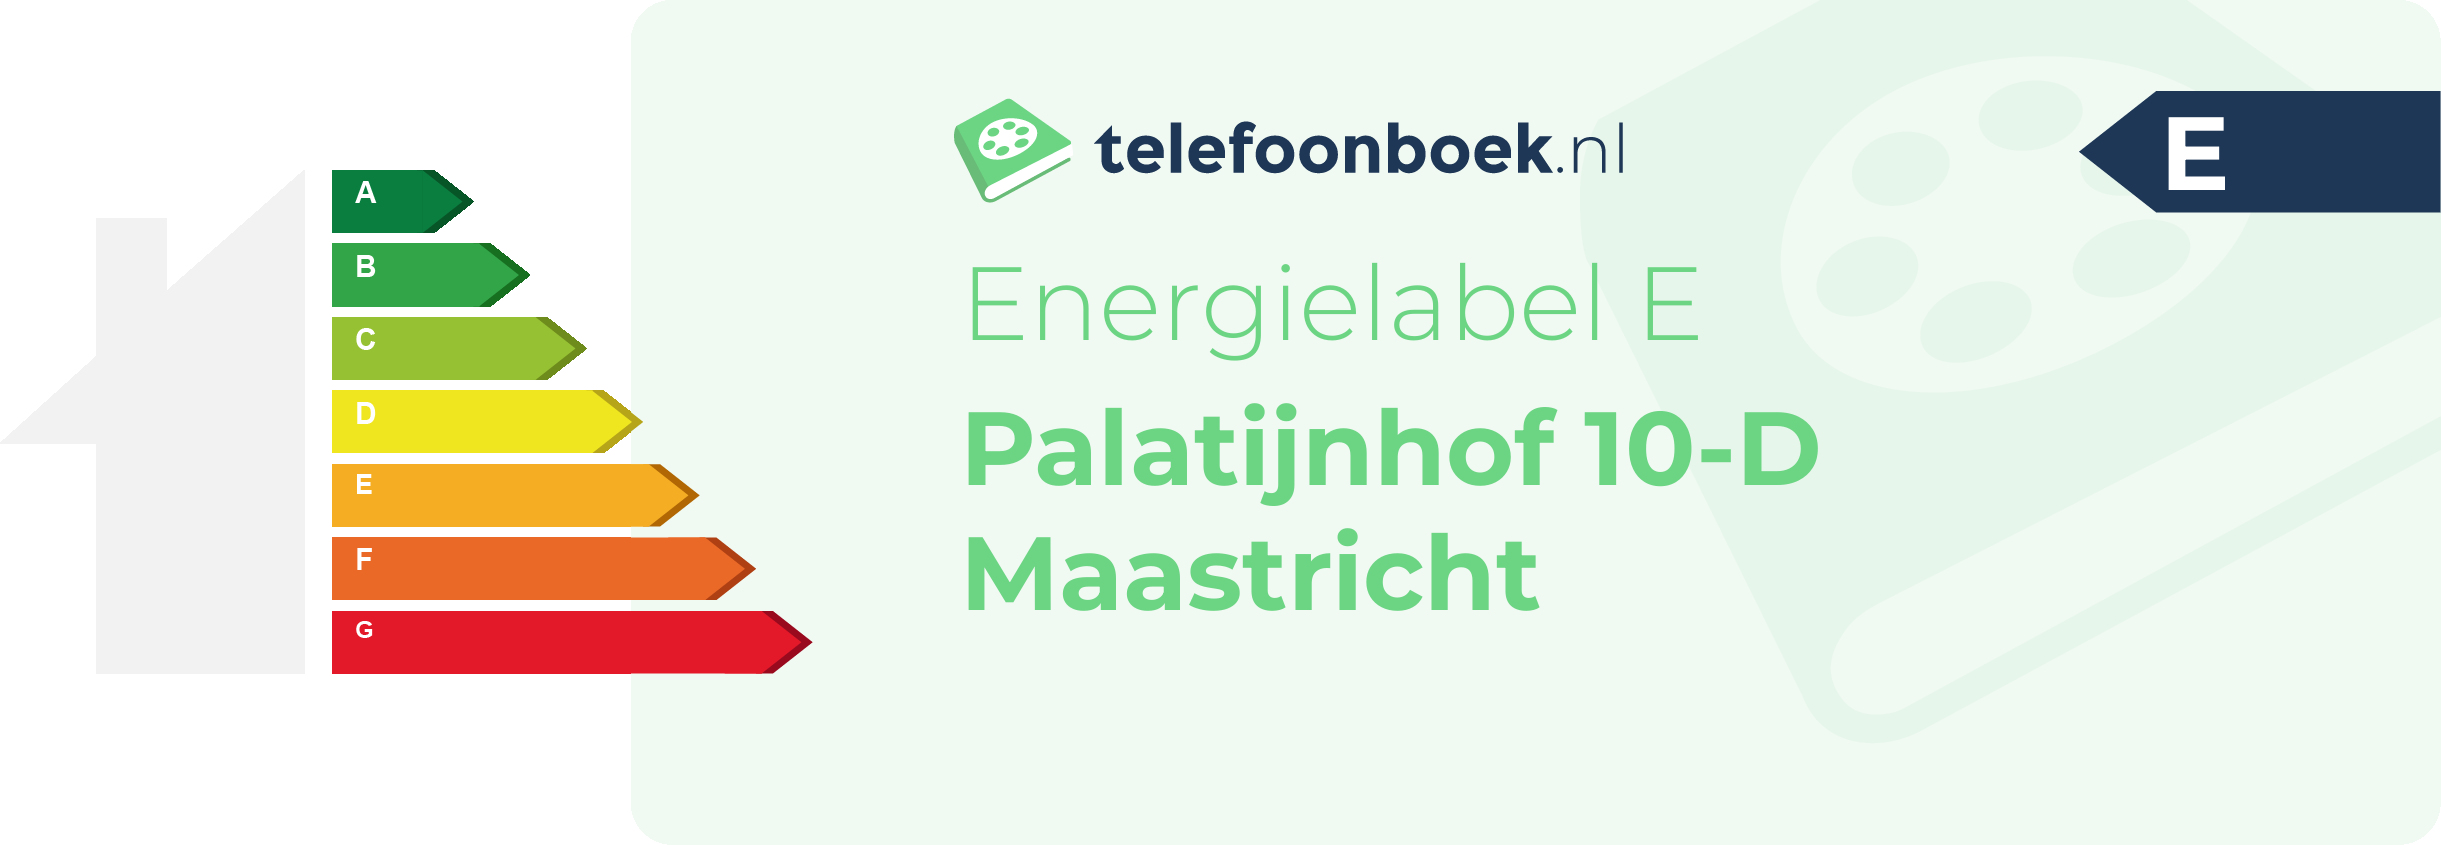 Energielabel Palatijnhof 10-D Maastricht